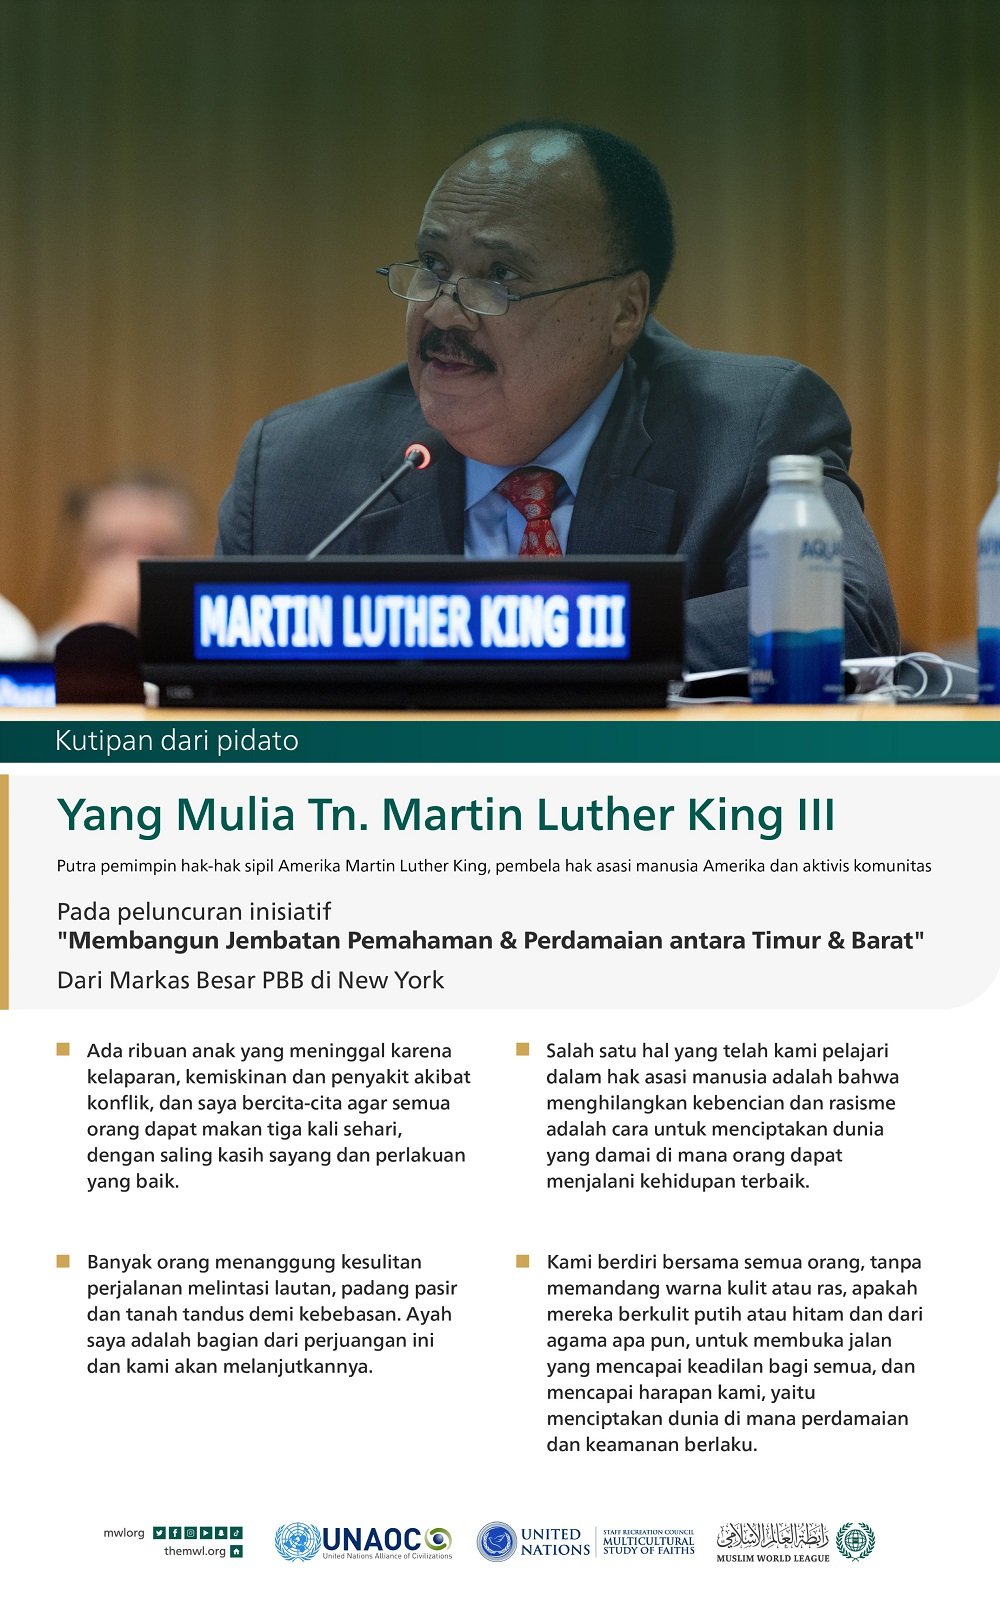 Kutipan dari pidato Yang Mulia Tn. Martin Luther King III, Putra pemimpin hak-hak sipil Amerika Martin Luther King, pembela hak asasi manusia Amerika dan aktivis komunitas, pada peluncuran inisiatif "Membangun Jembatan Pemahaman & Perdamaian antara Timur & Barat", dari Markas Besar PBB di New York: